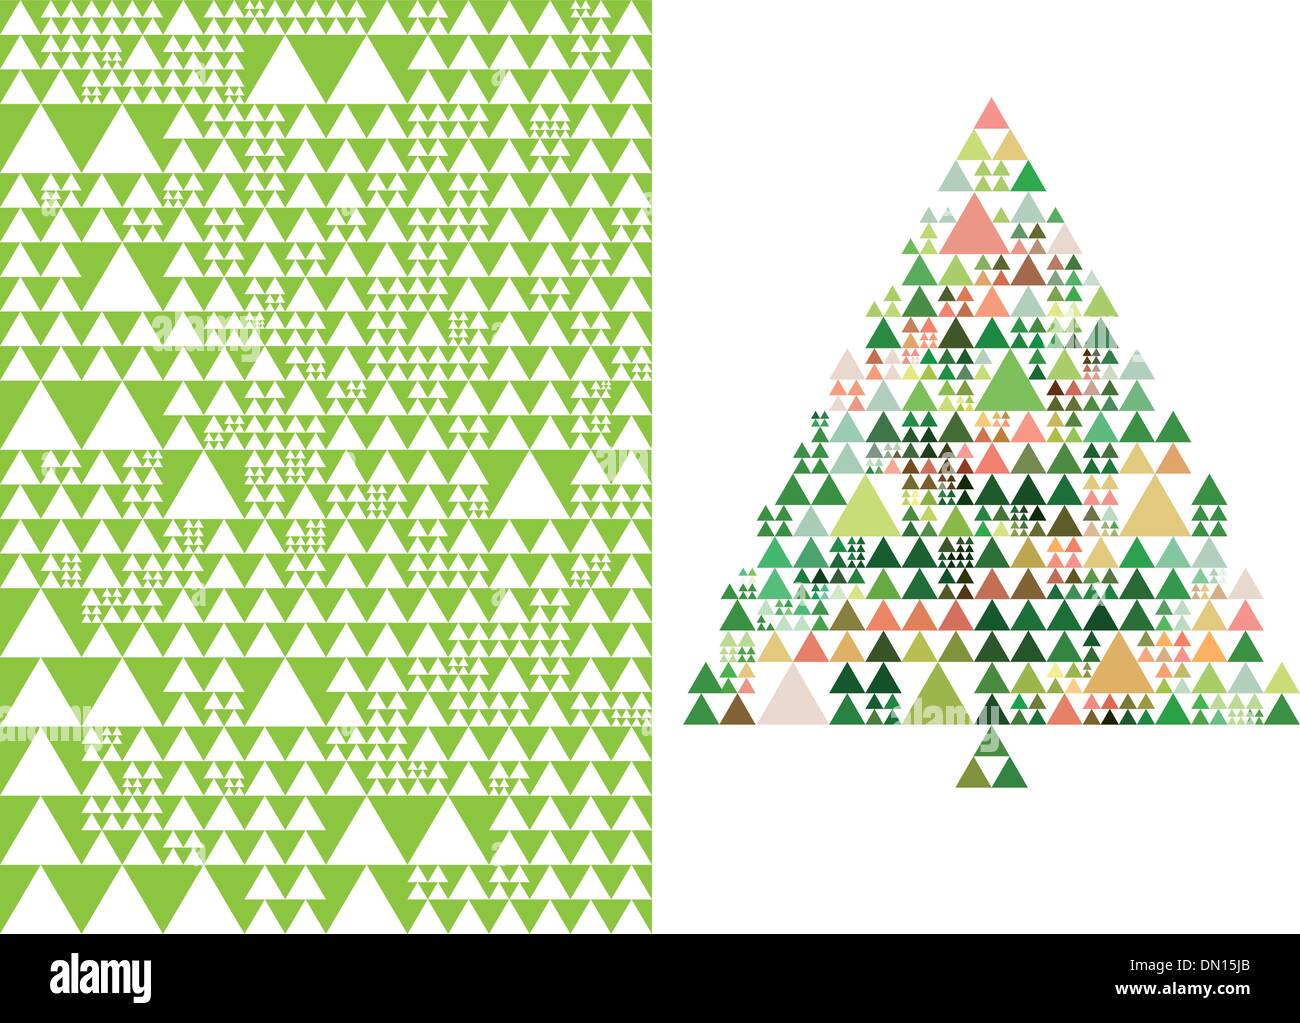 Weihnachtsbaum und Muster, Vektor Stock Vektor